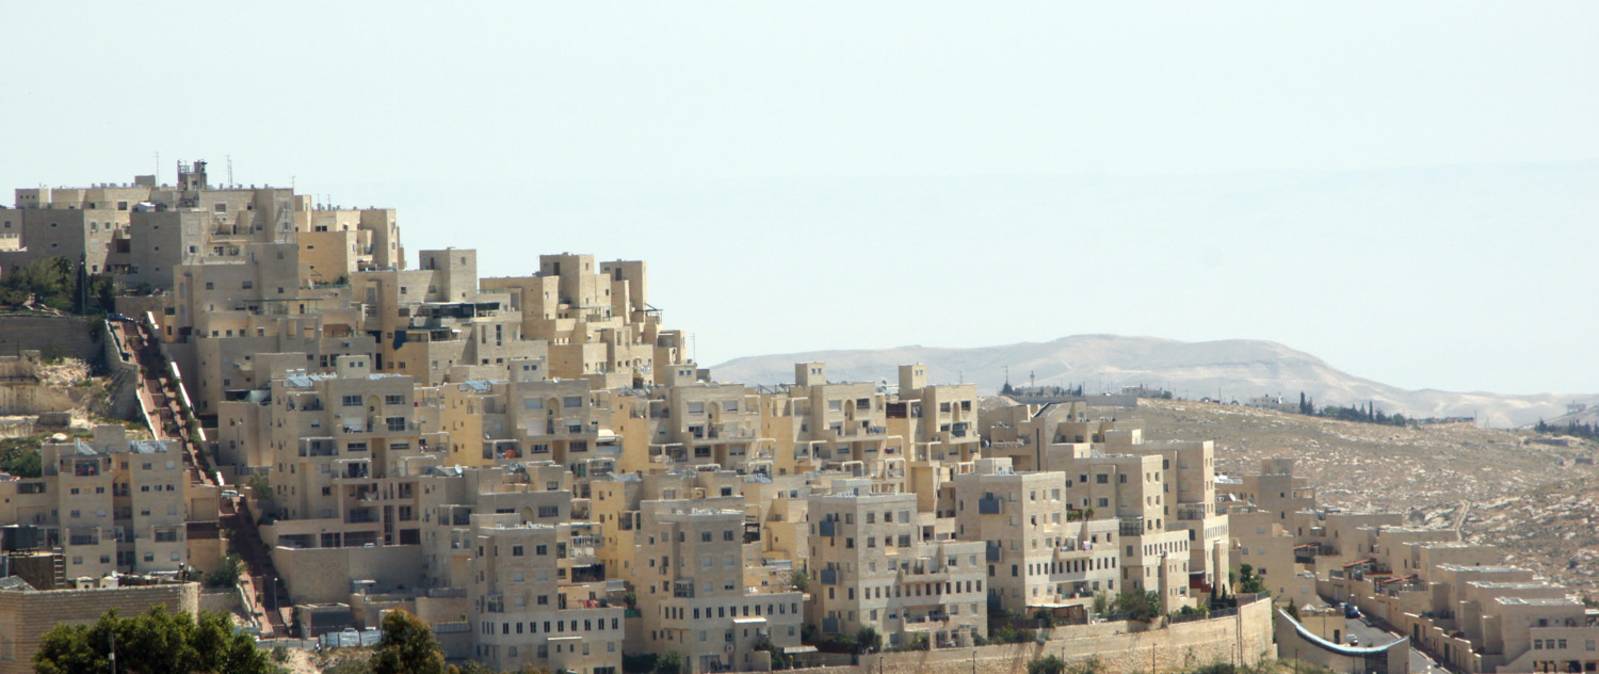 Bethlehem - jüdische Siedlung